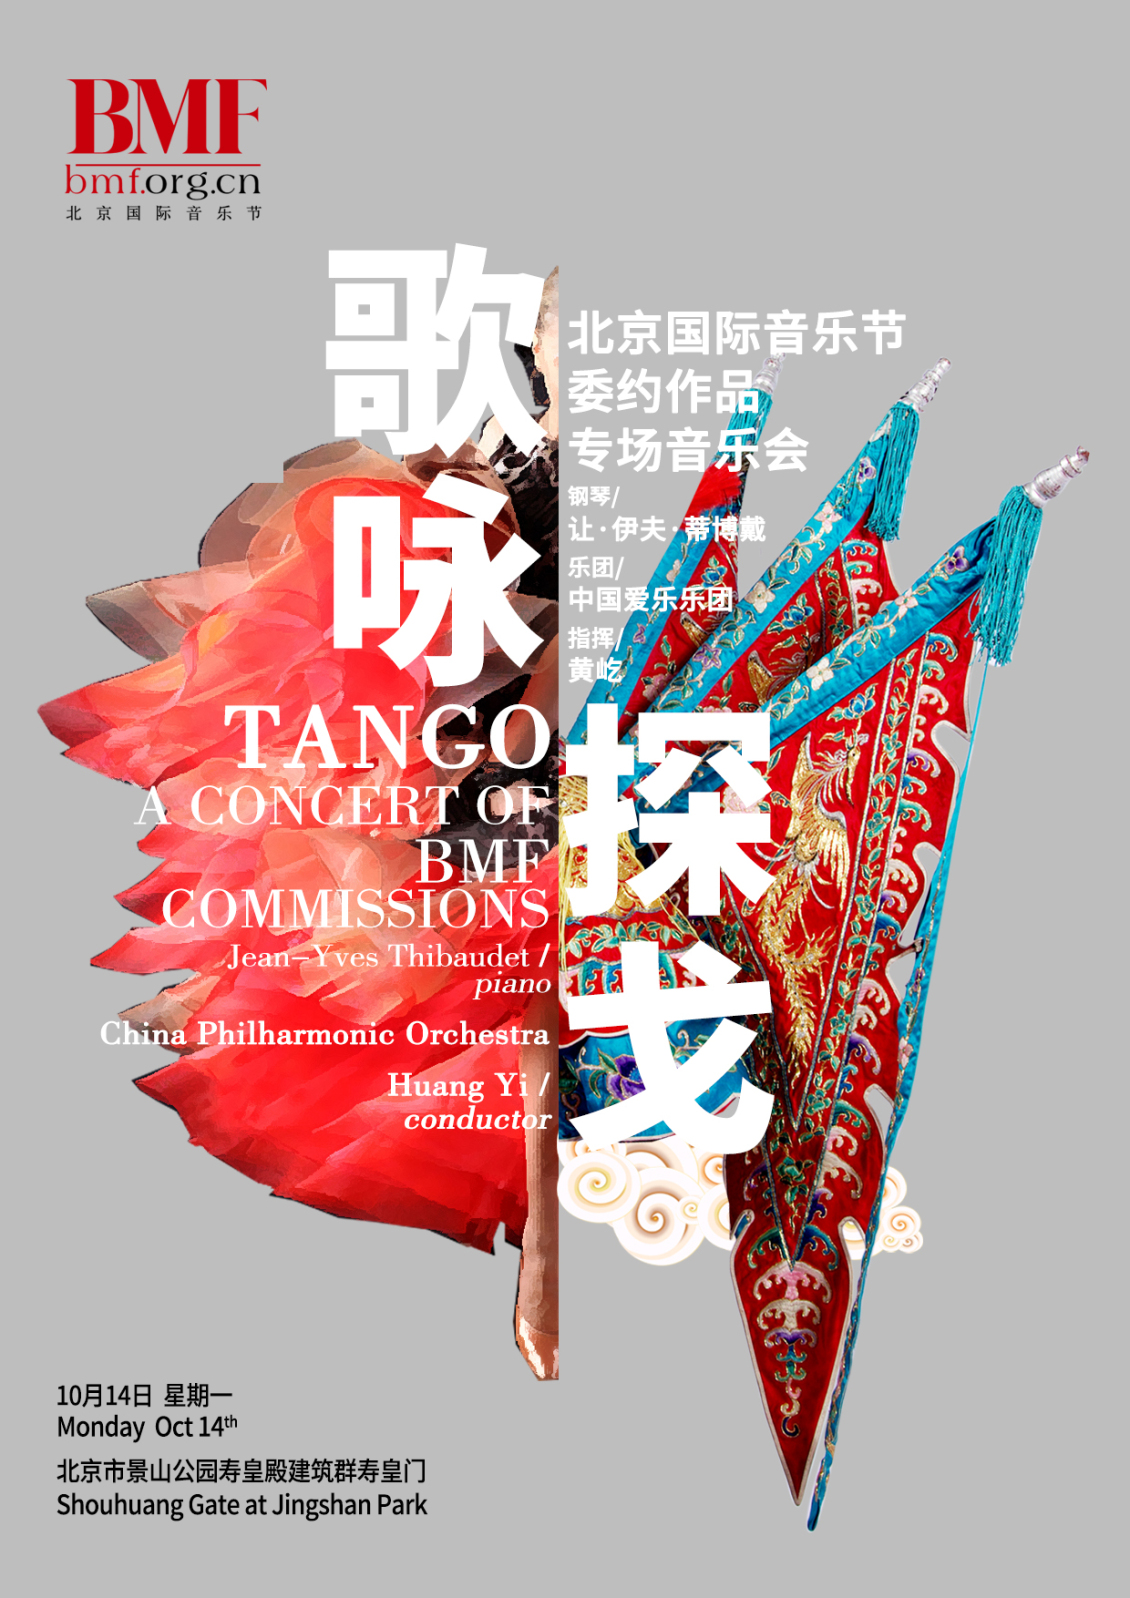 淘宝美工小李爱设计北京国际音乐节海报作品